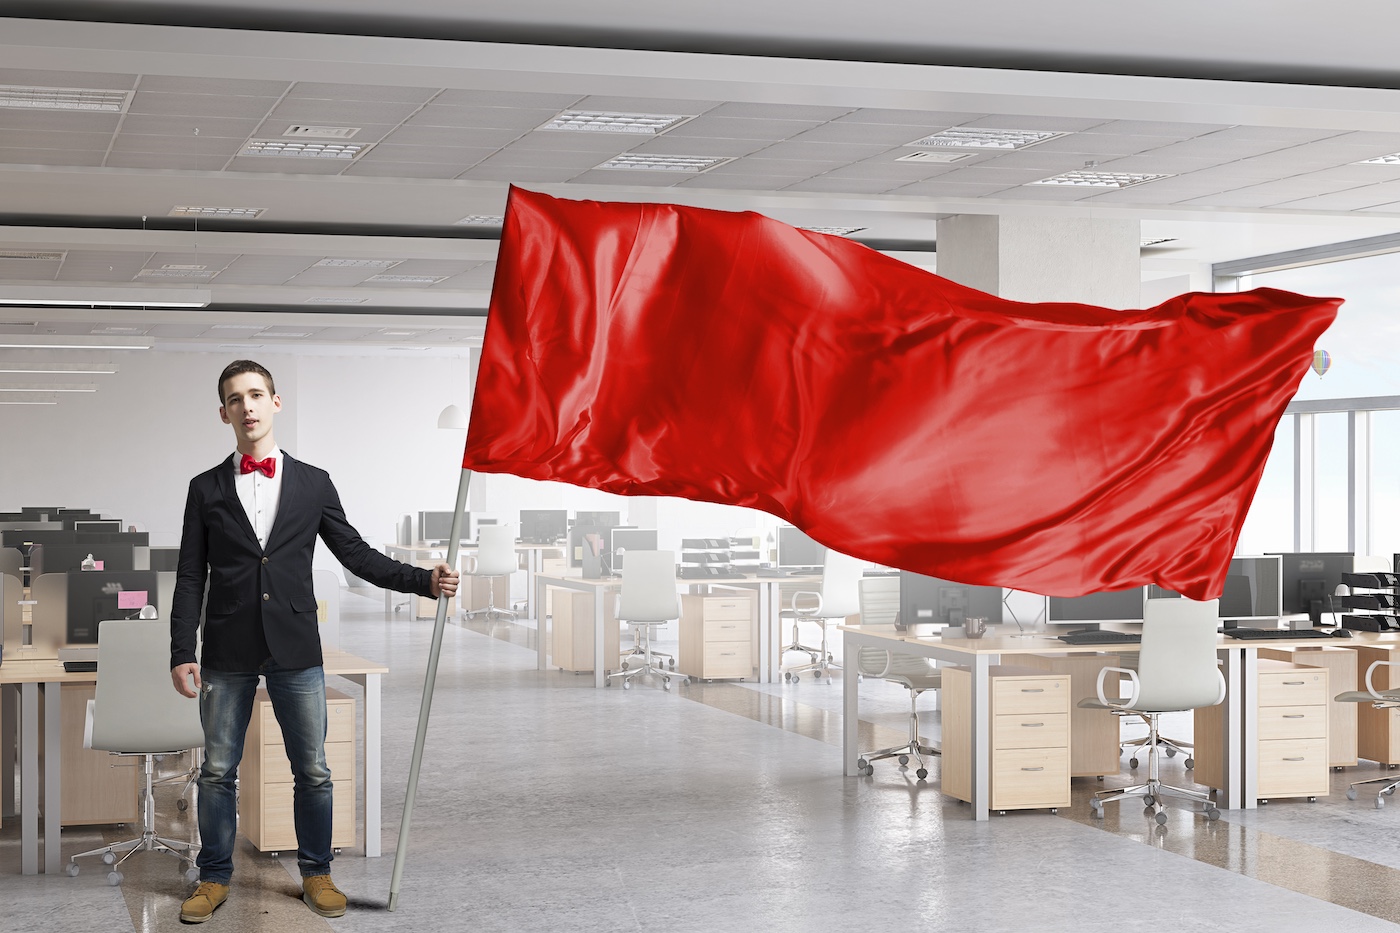 Uomo che sventola bandiera rossa in guardia da un'azienda tecnologica vuota